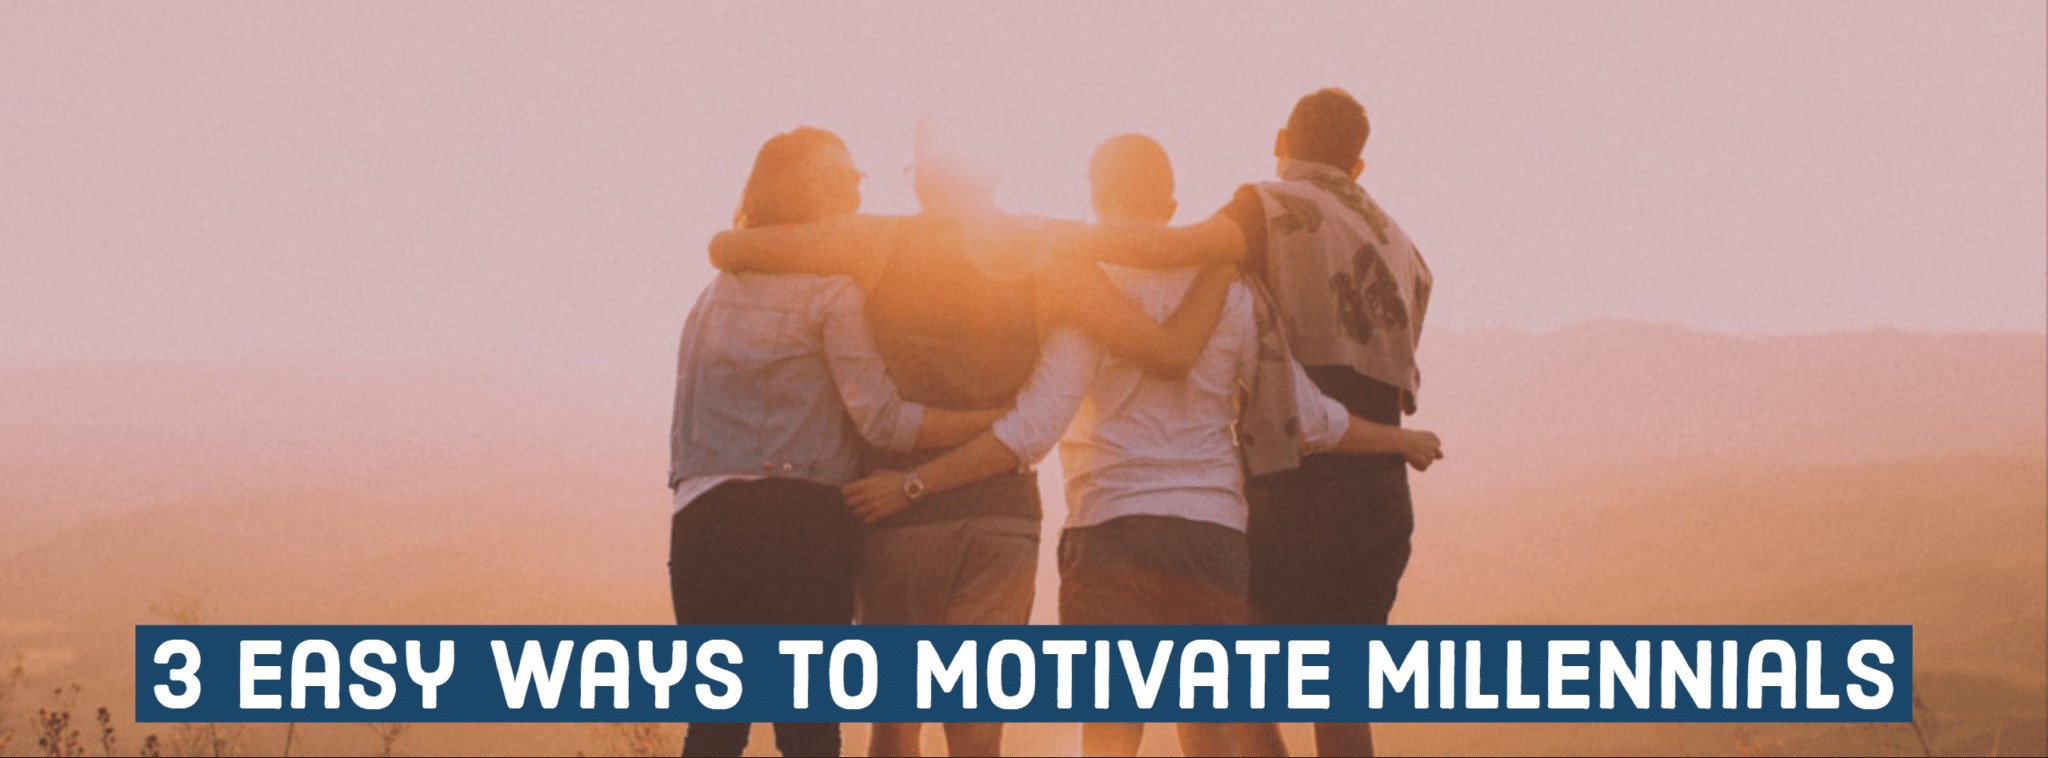 3 Easy ways to motivate millennials